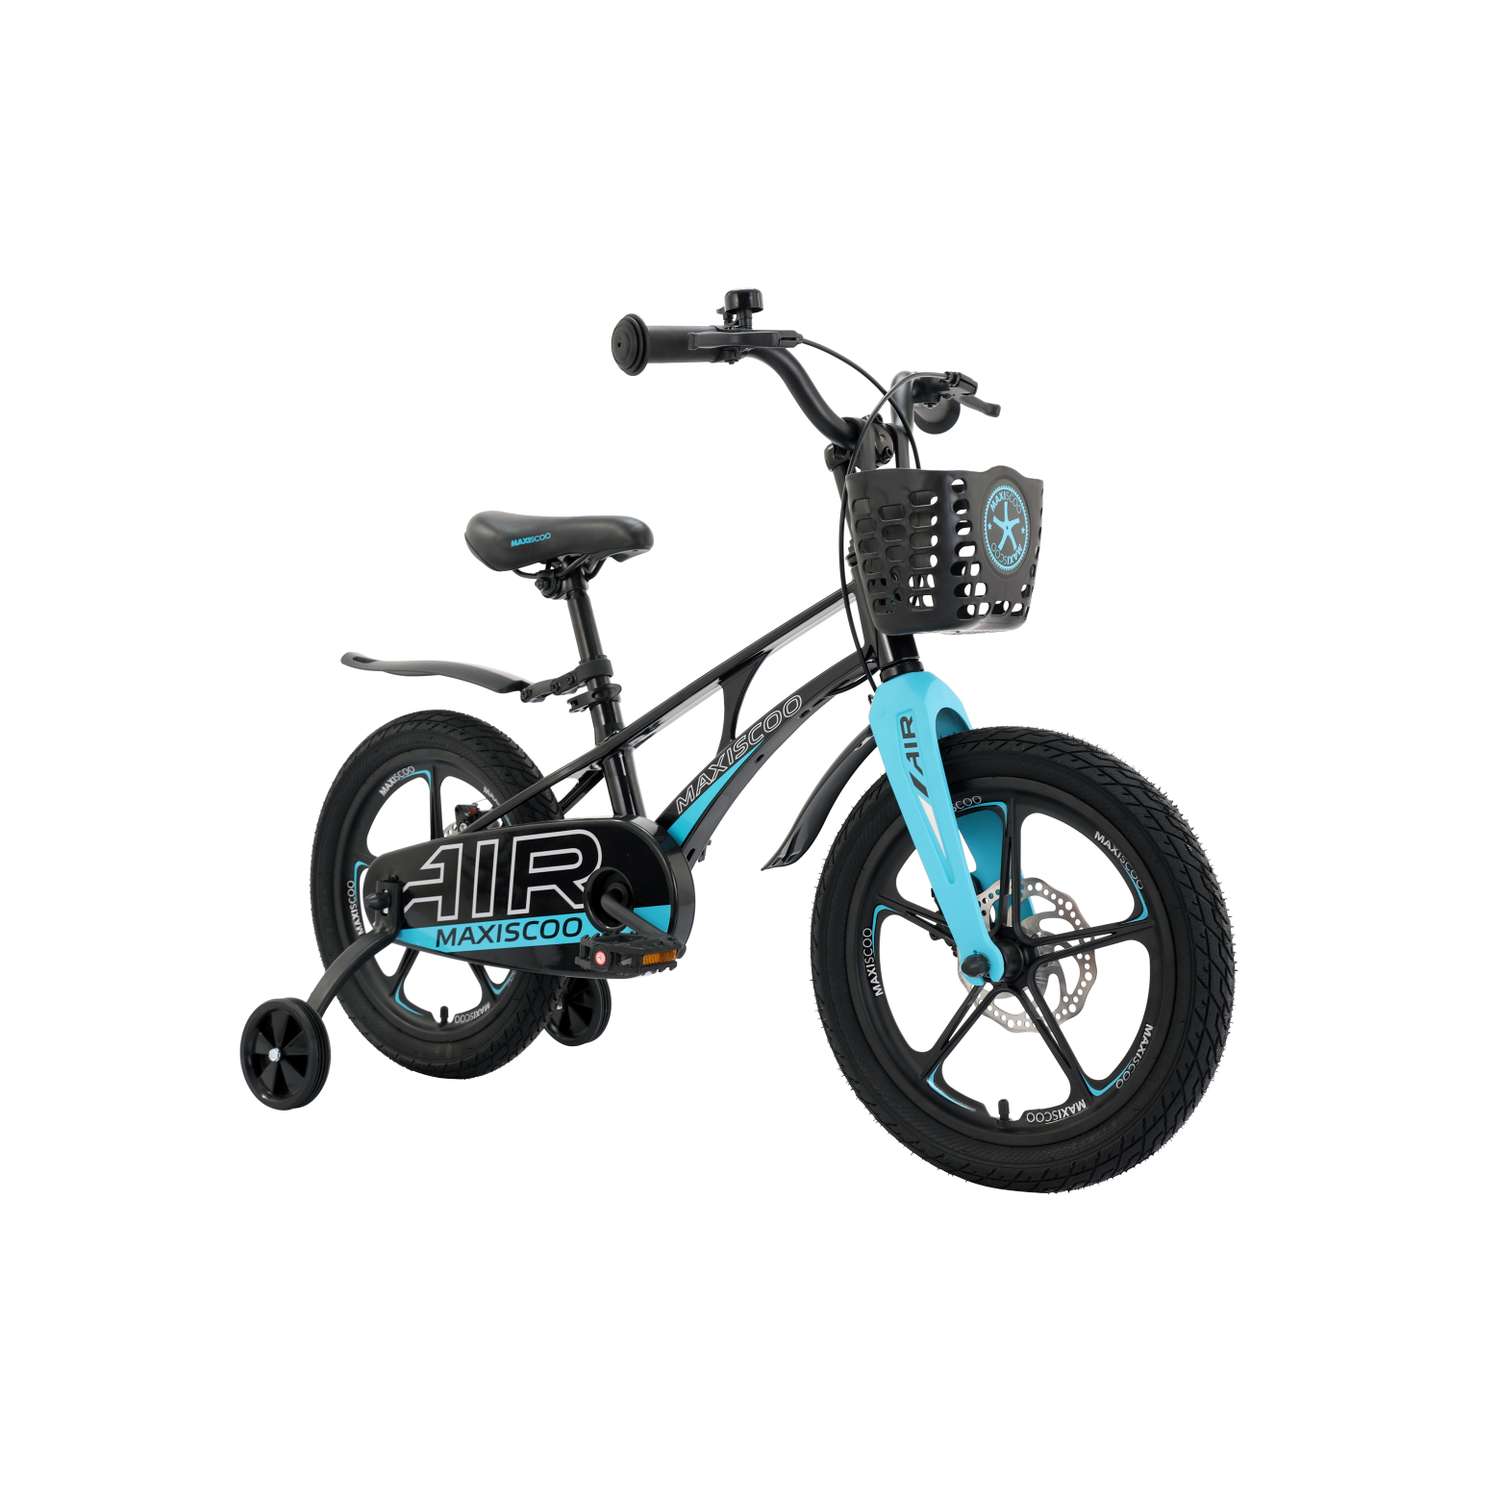 Детский двухколесный велосипед Maxiscoo Airделюкс плюс 16 черный аметист - фото 1